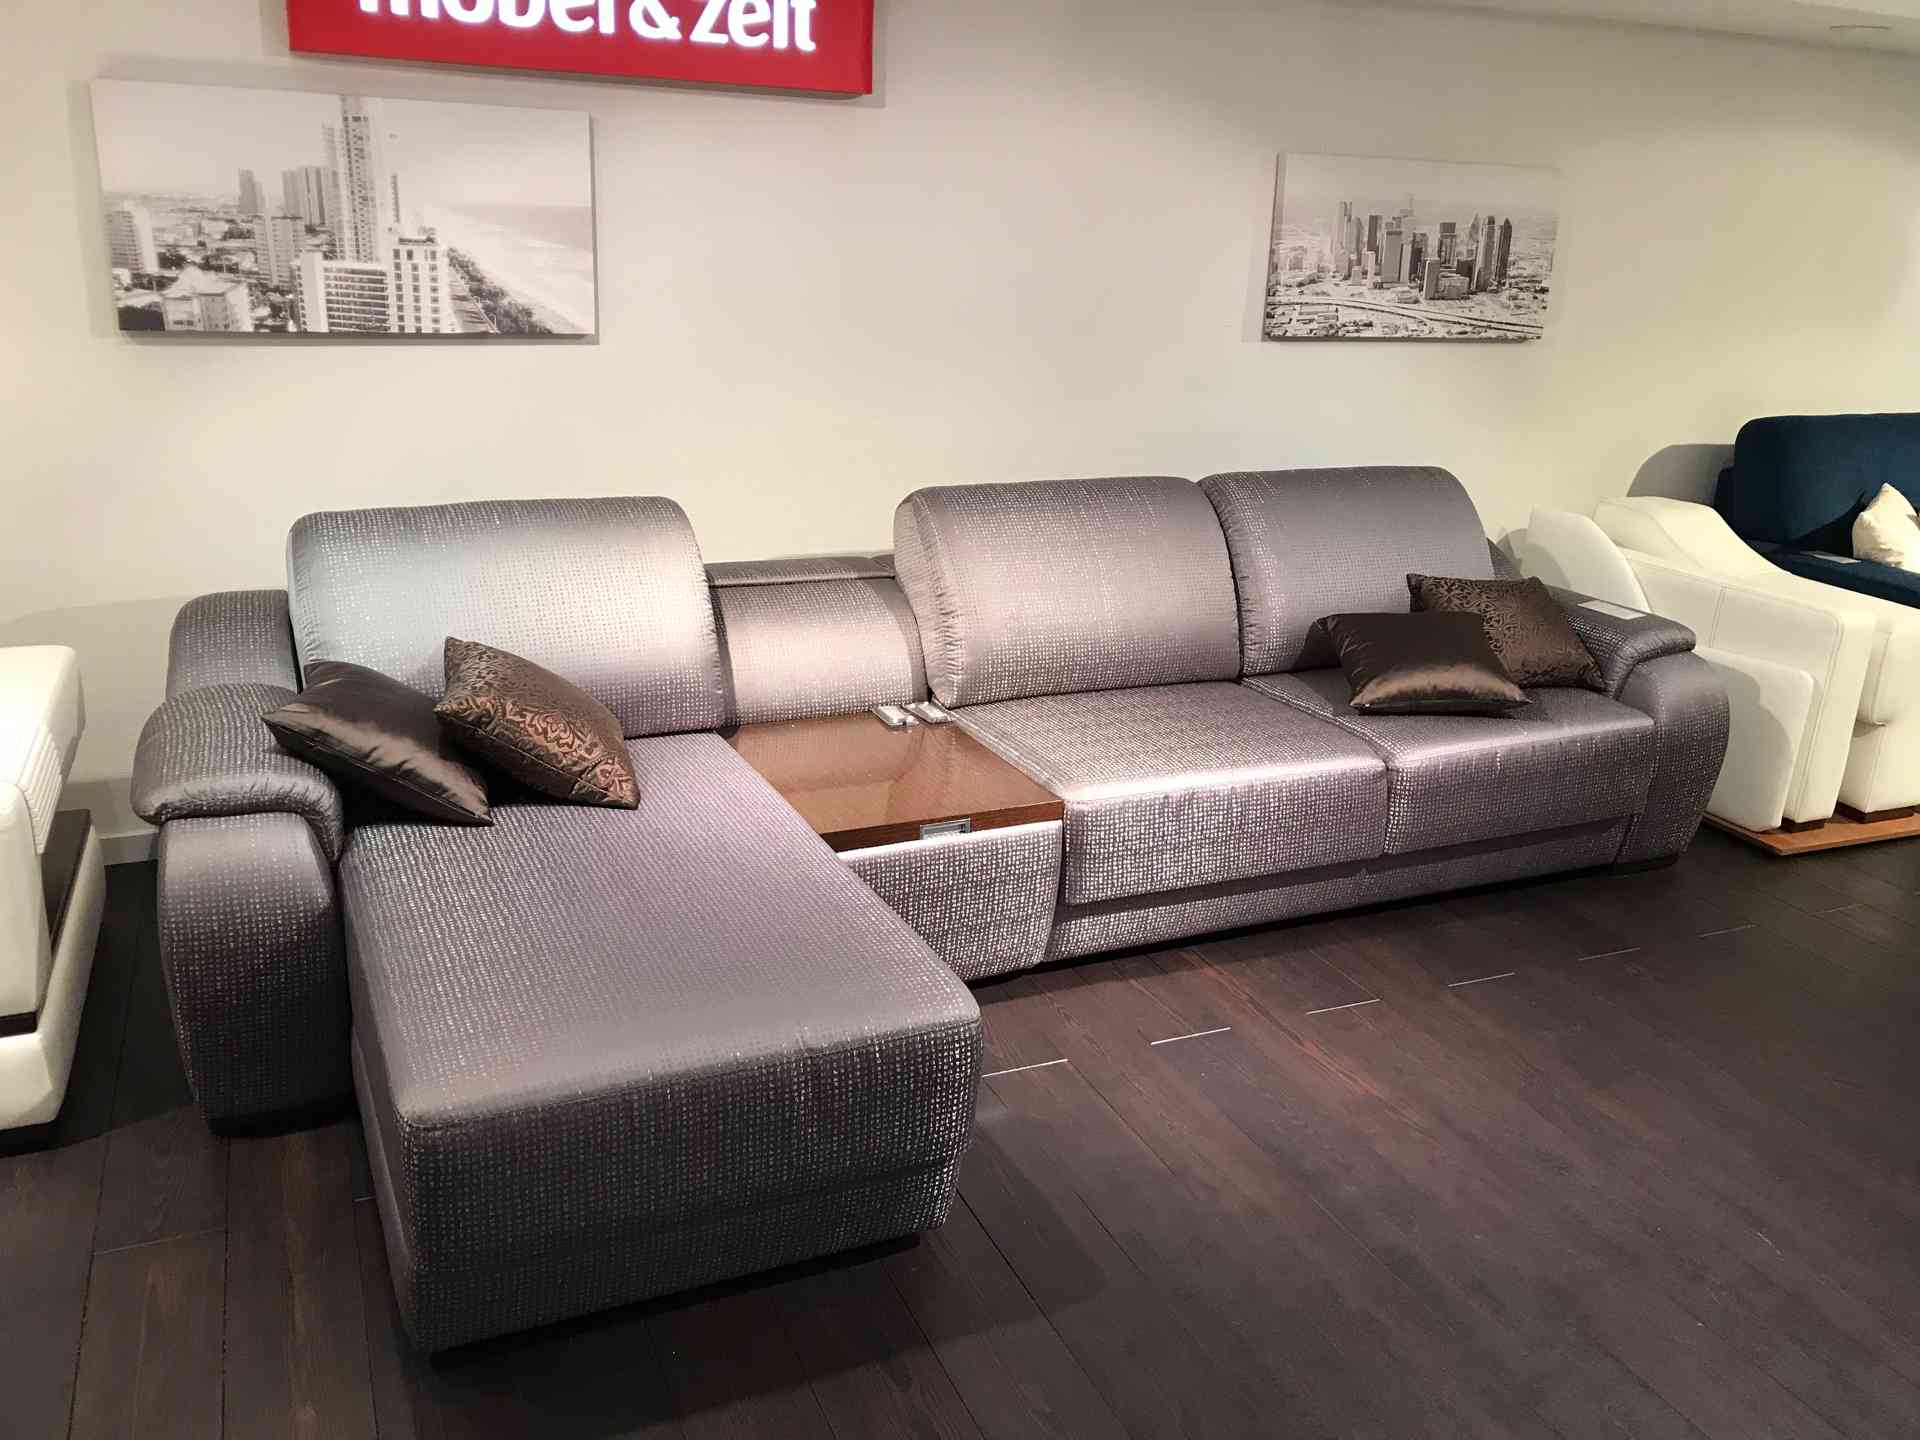 немецкая мягкая мебель mobel zeit